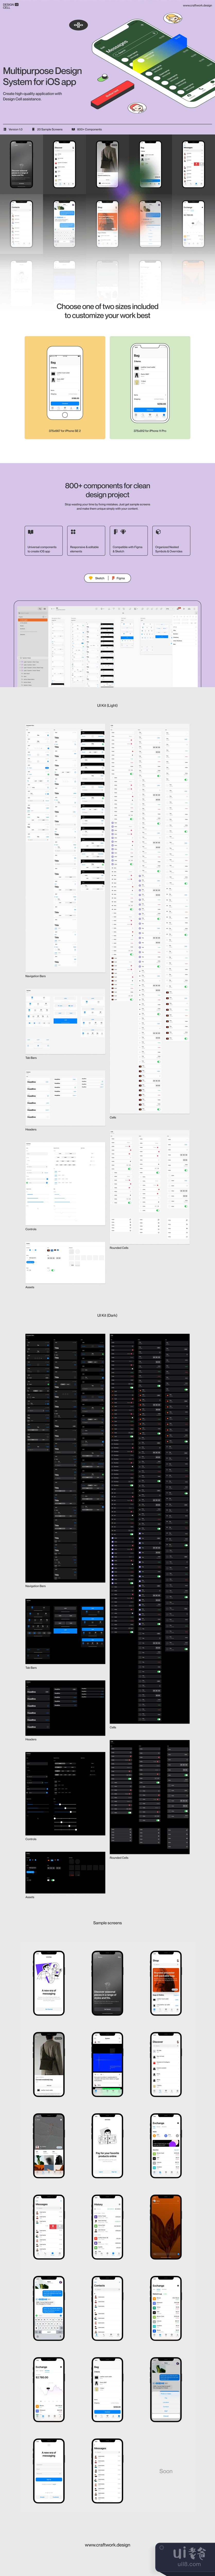 设计细胞iOS UI工具包 (Design Cell iOS UI Kit)插图1